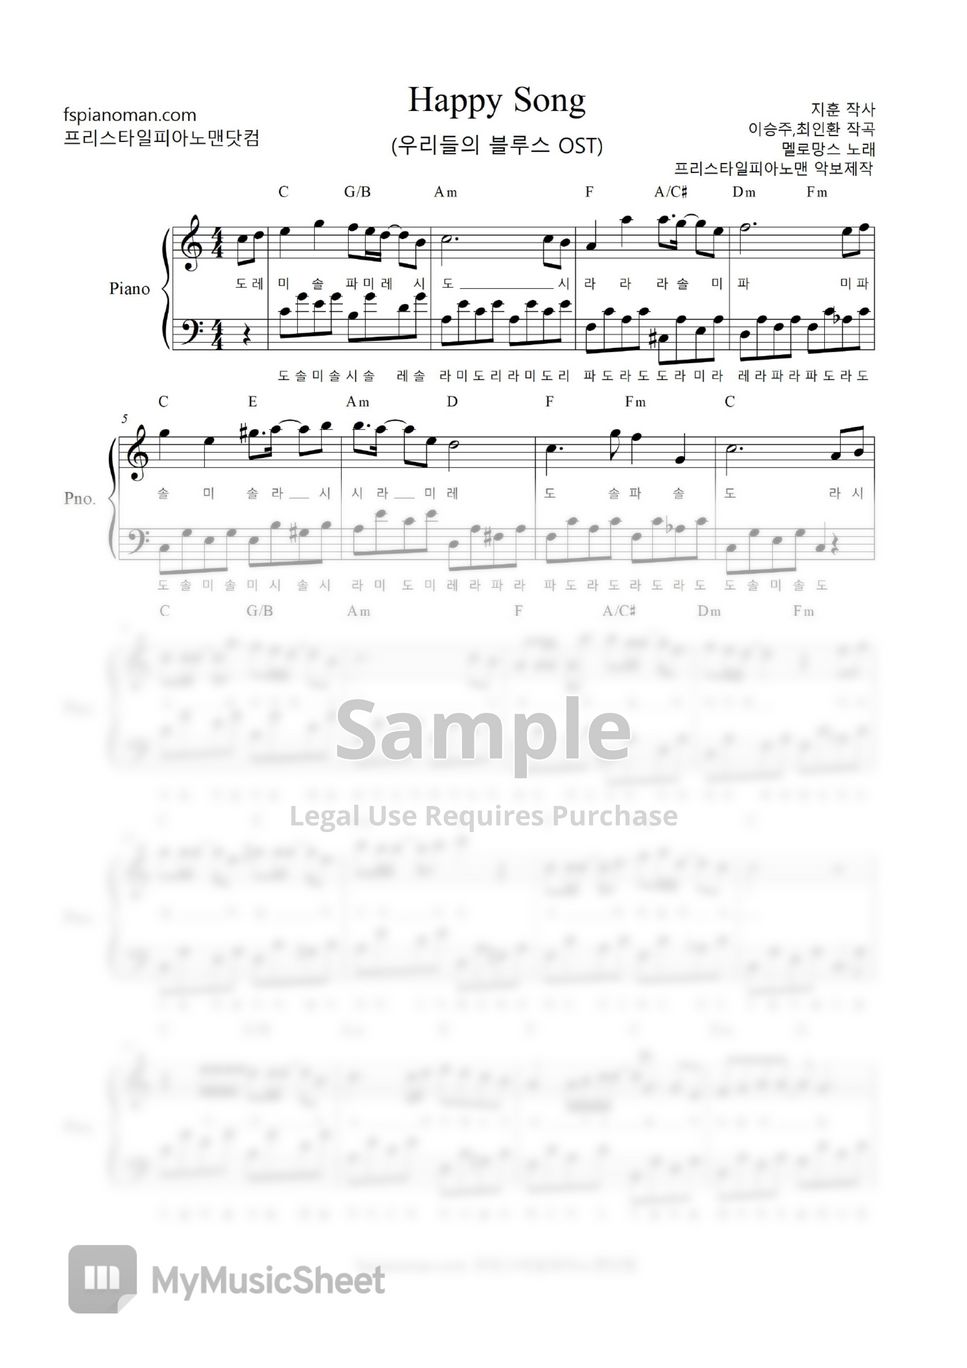 멜로망스 - Happy Song (우리들의 블루스 OST) by freestyle pianoman